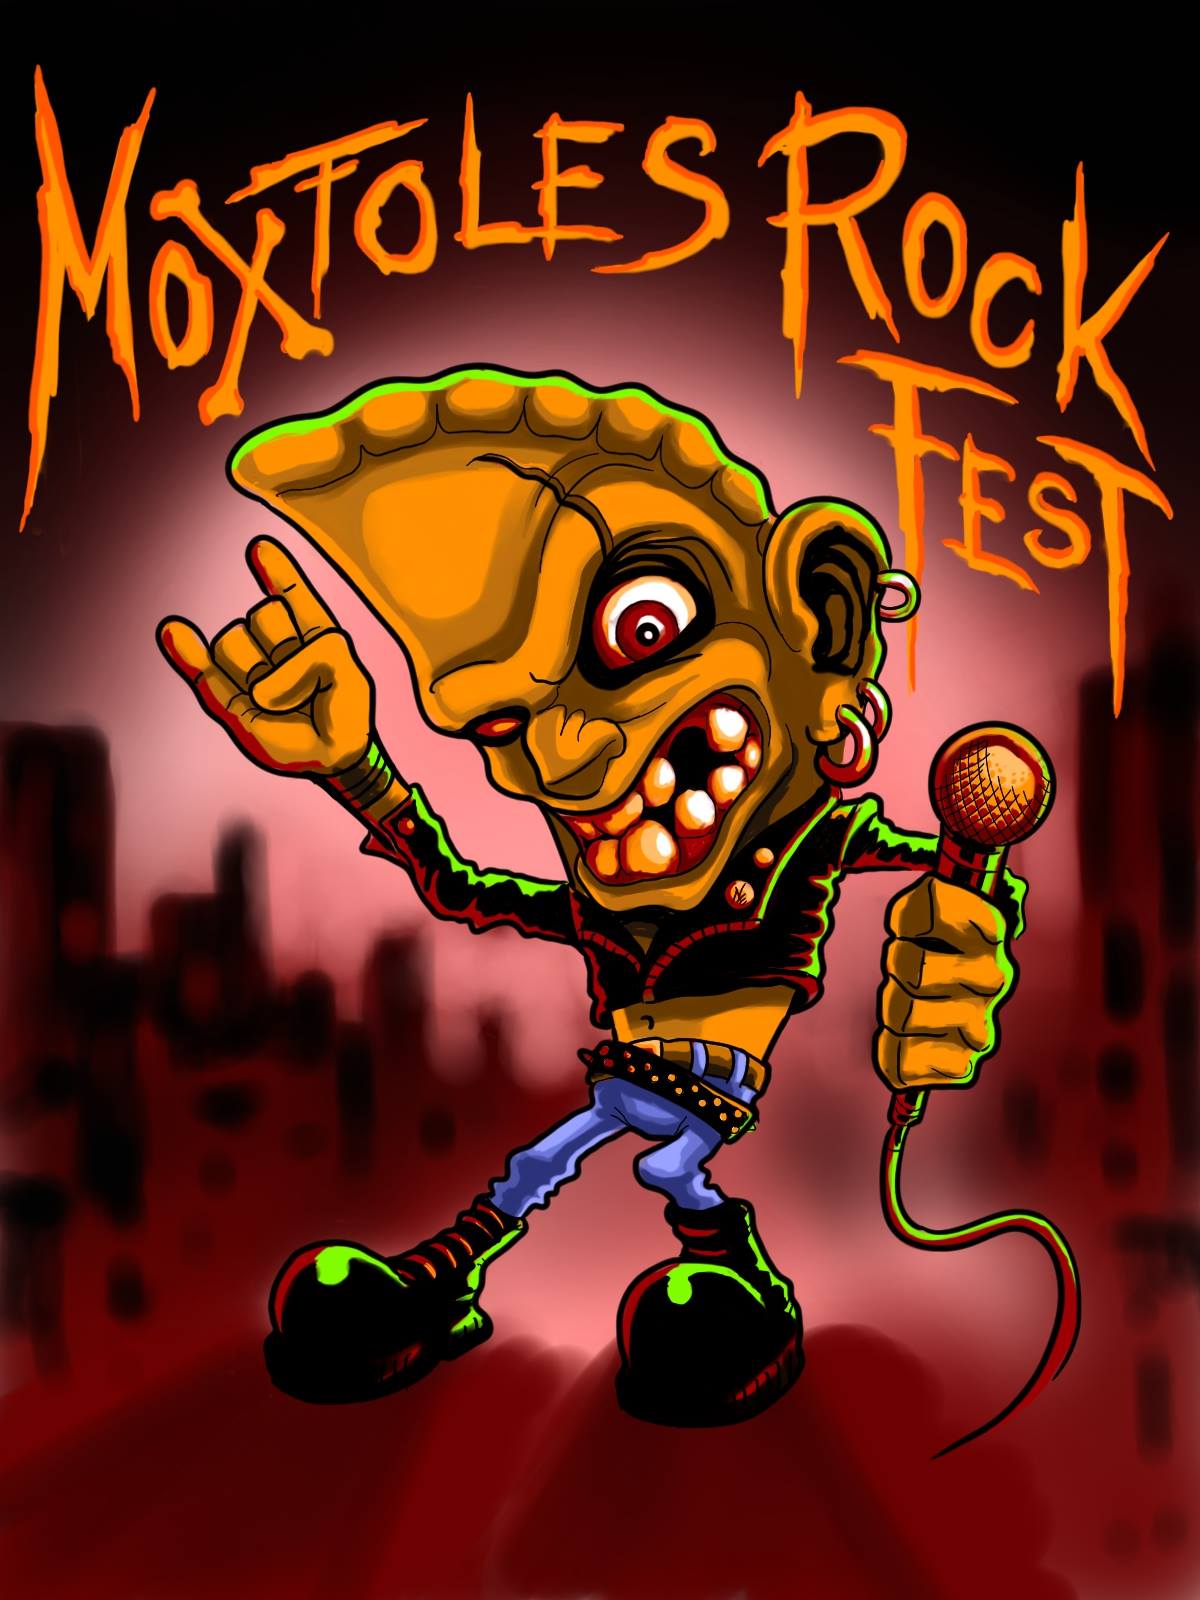 Moxtoles ROCK FEST